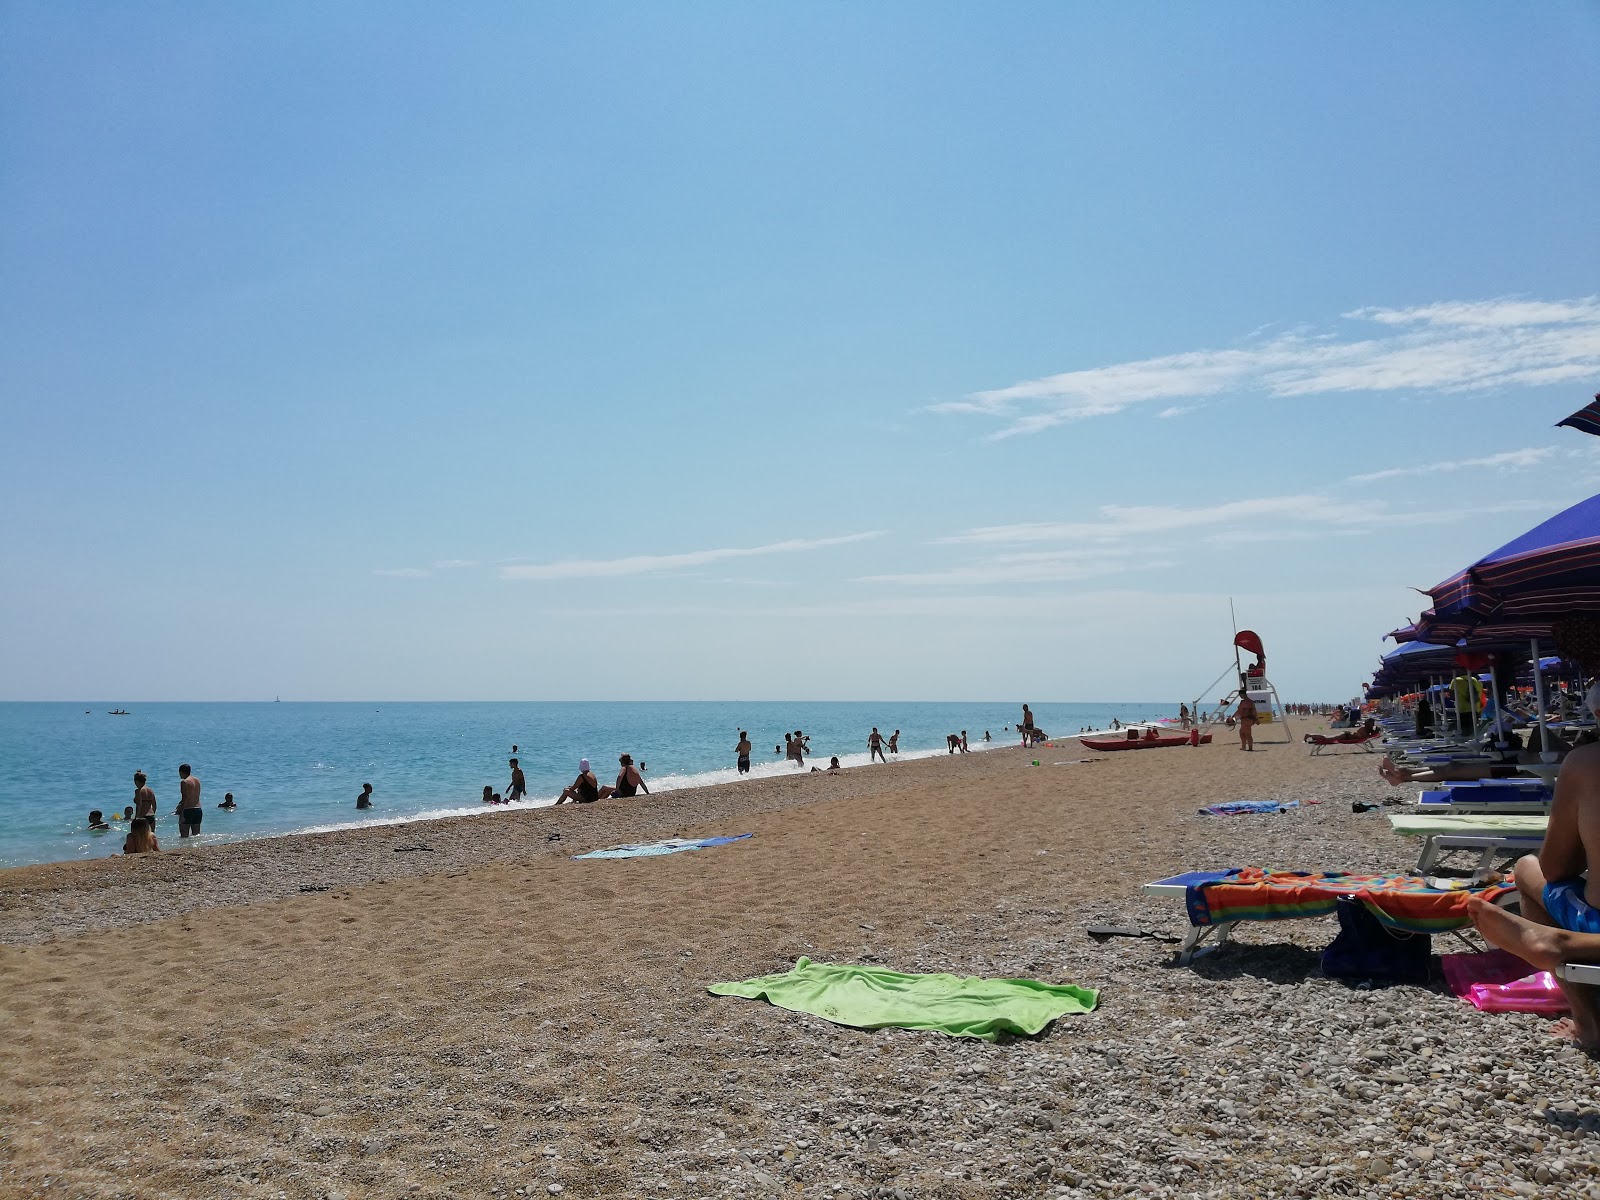 Spiaggia Sassi Neri'in fotoğrafı plaj tatil beldesi alanı